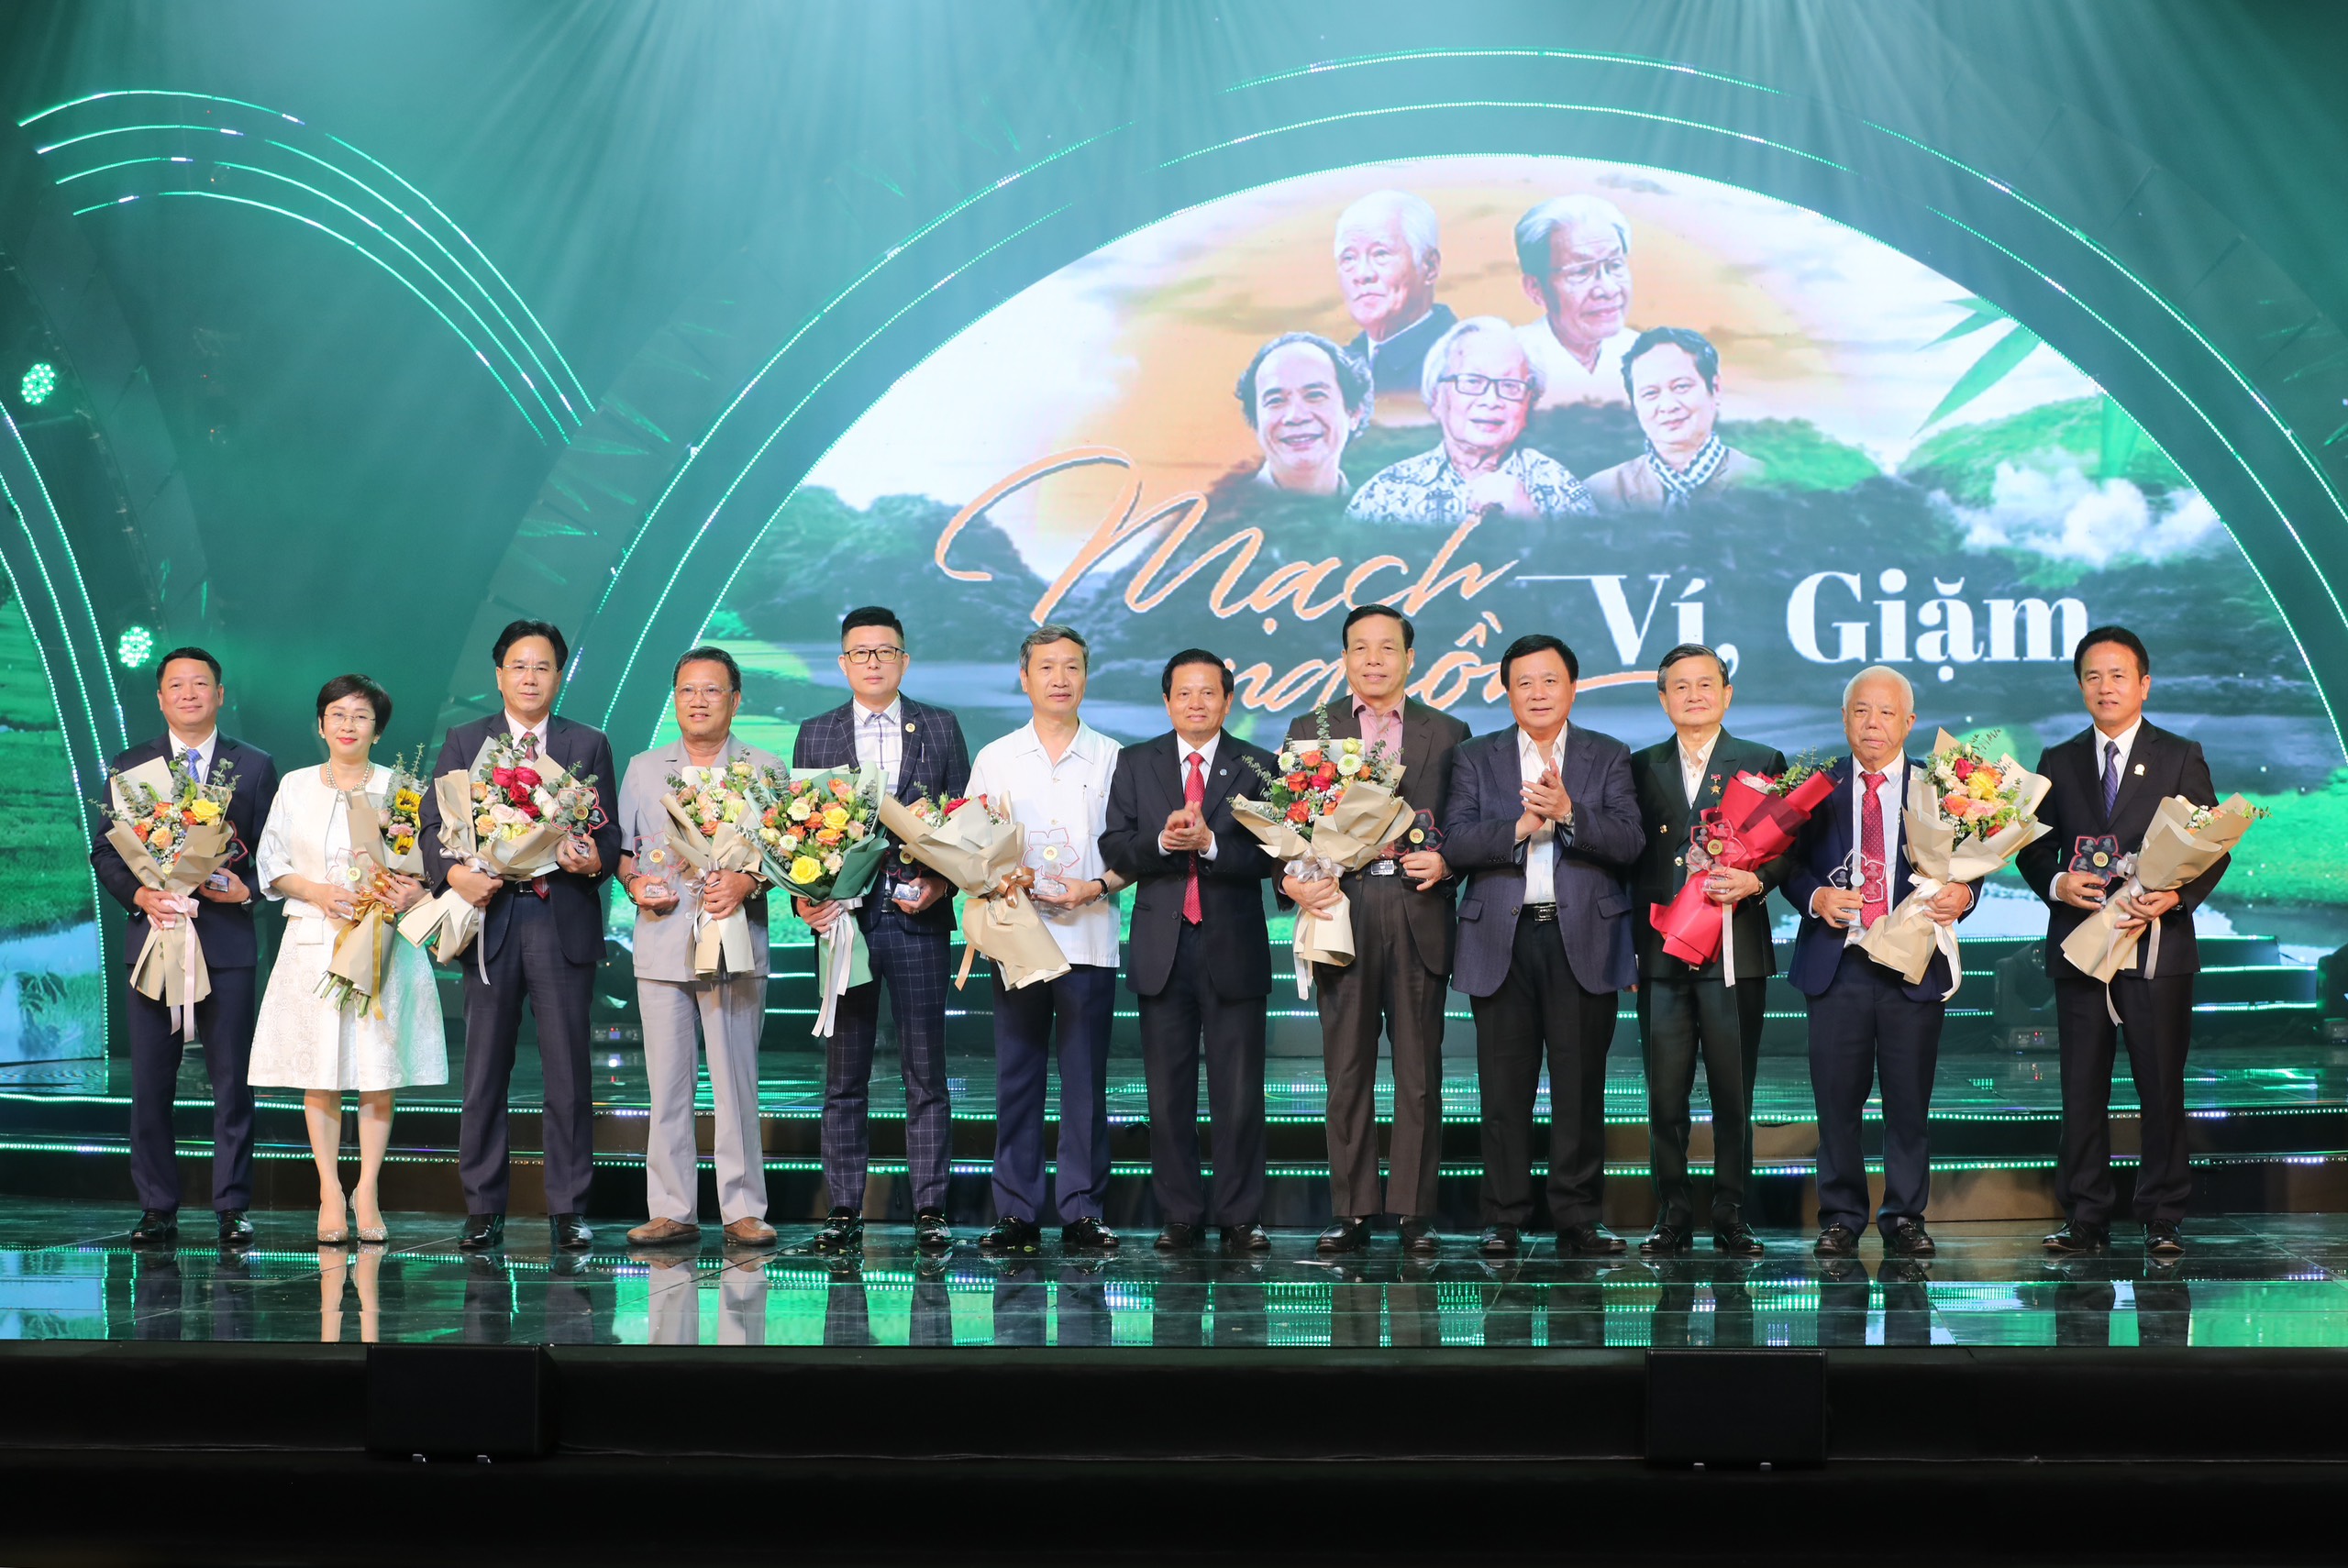 Đồng chí Nguyễn Xuân Thắng UVBCT - Giám đốc HVQG Hồ Chí Minh và Chủ tịch HĐHNA tại Hà Nội tặng hoa cho các nhà tài trợ đêm nhạc Mạch Nguồn Ví, Giặm (1).jpg